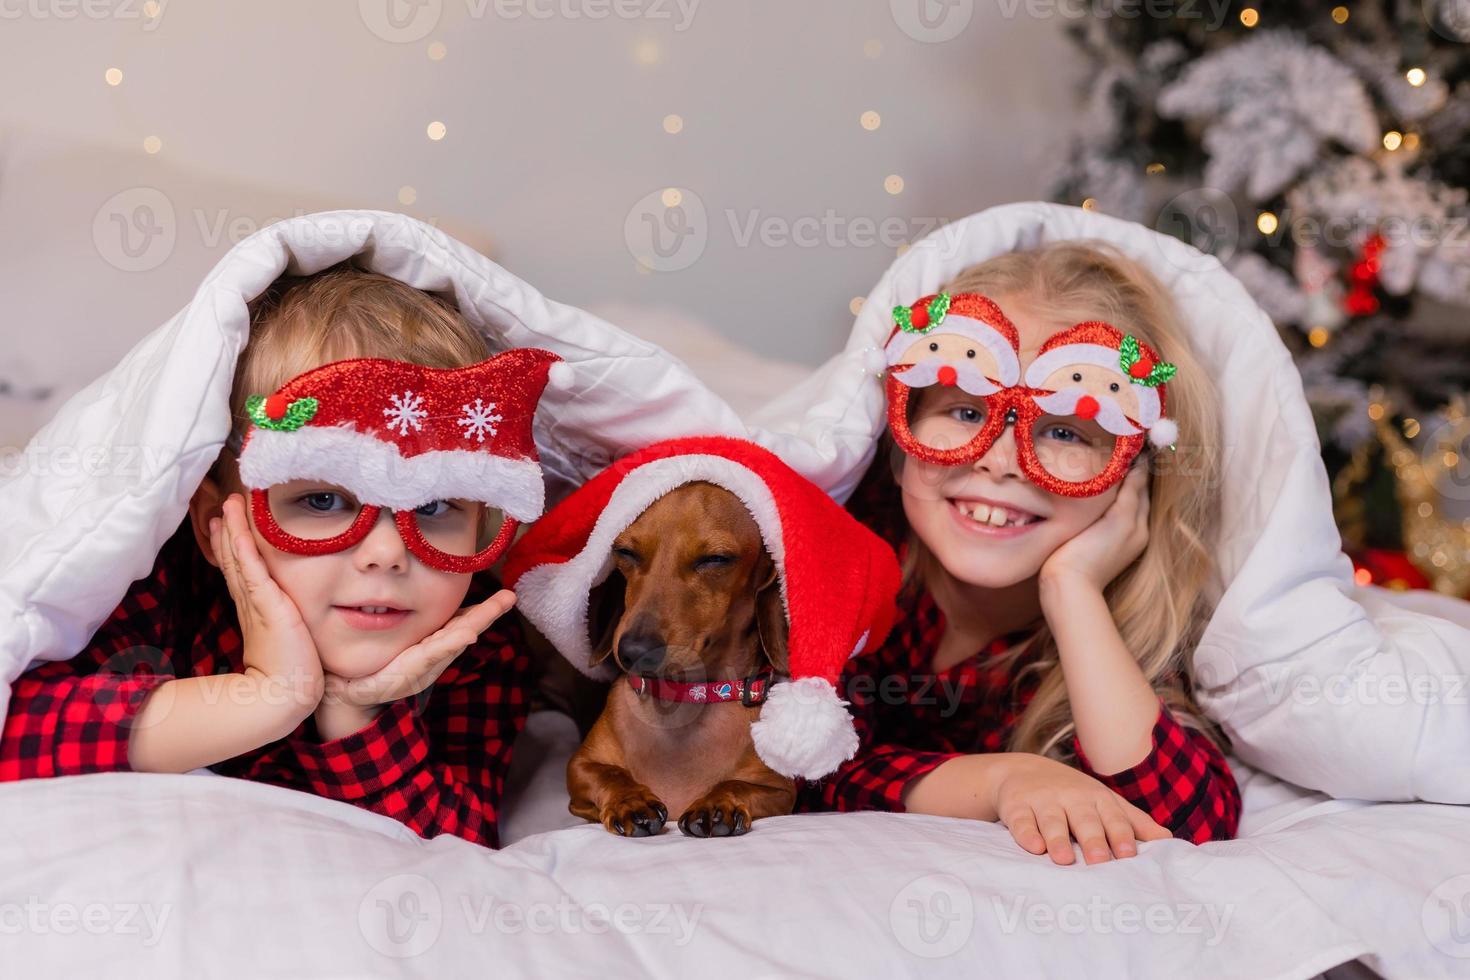 dos niños, un niño y una niña, están acostados en la cama con su querida mascota para navidad. foto de alta calidad